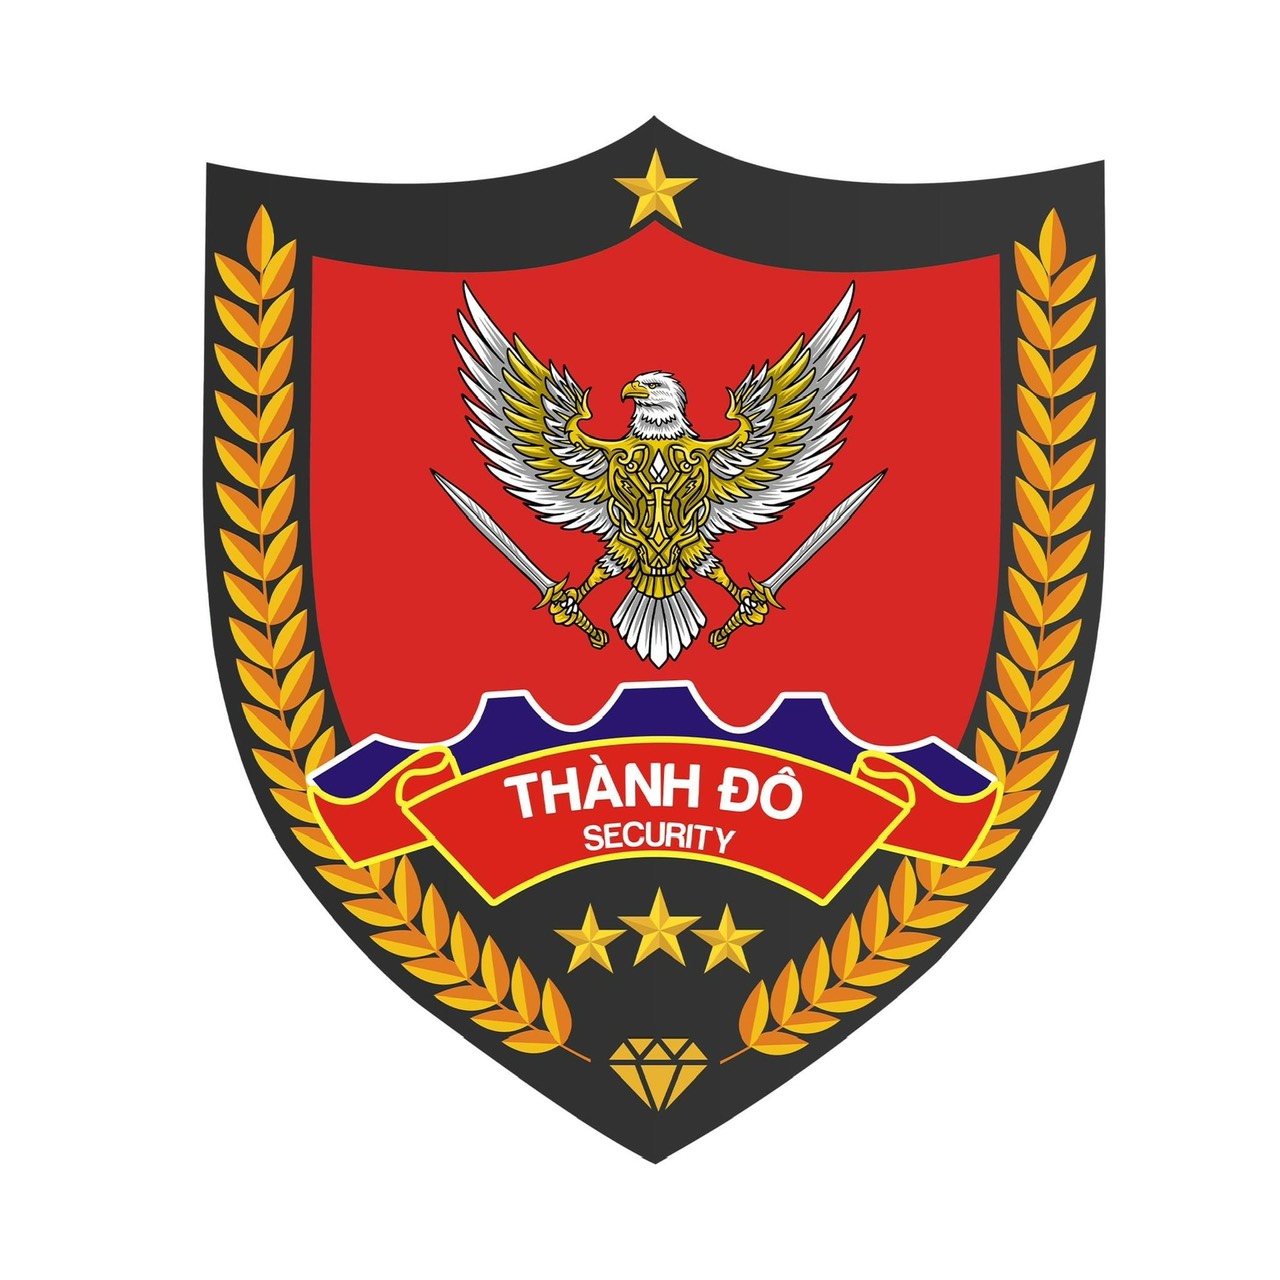 Tập Đoàn Bảo Vệ - Vệ Sĩ An Ninh Thành Đô